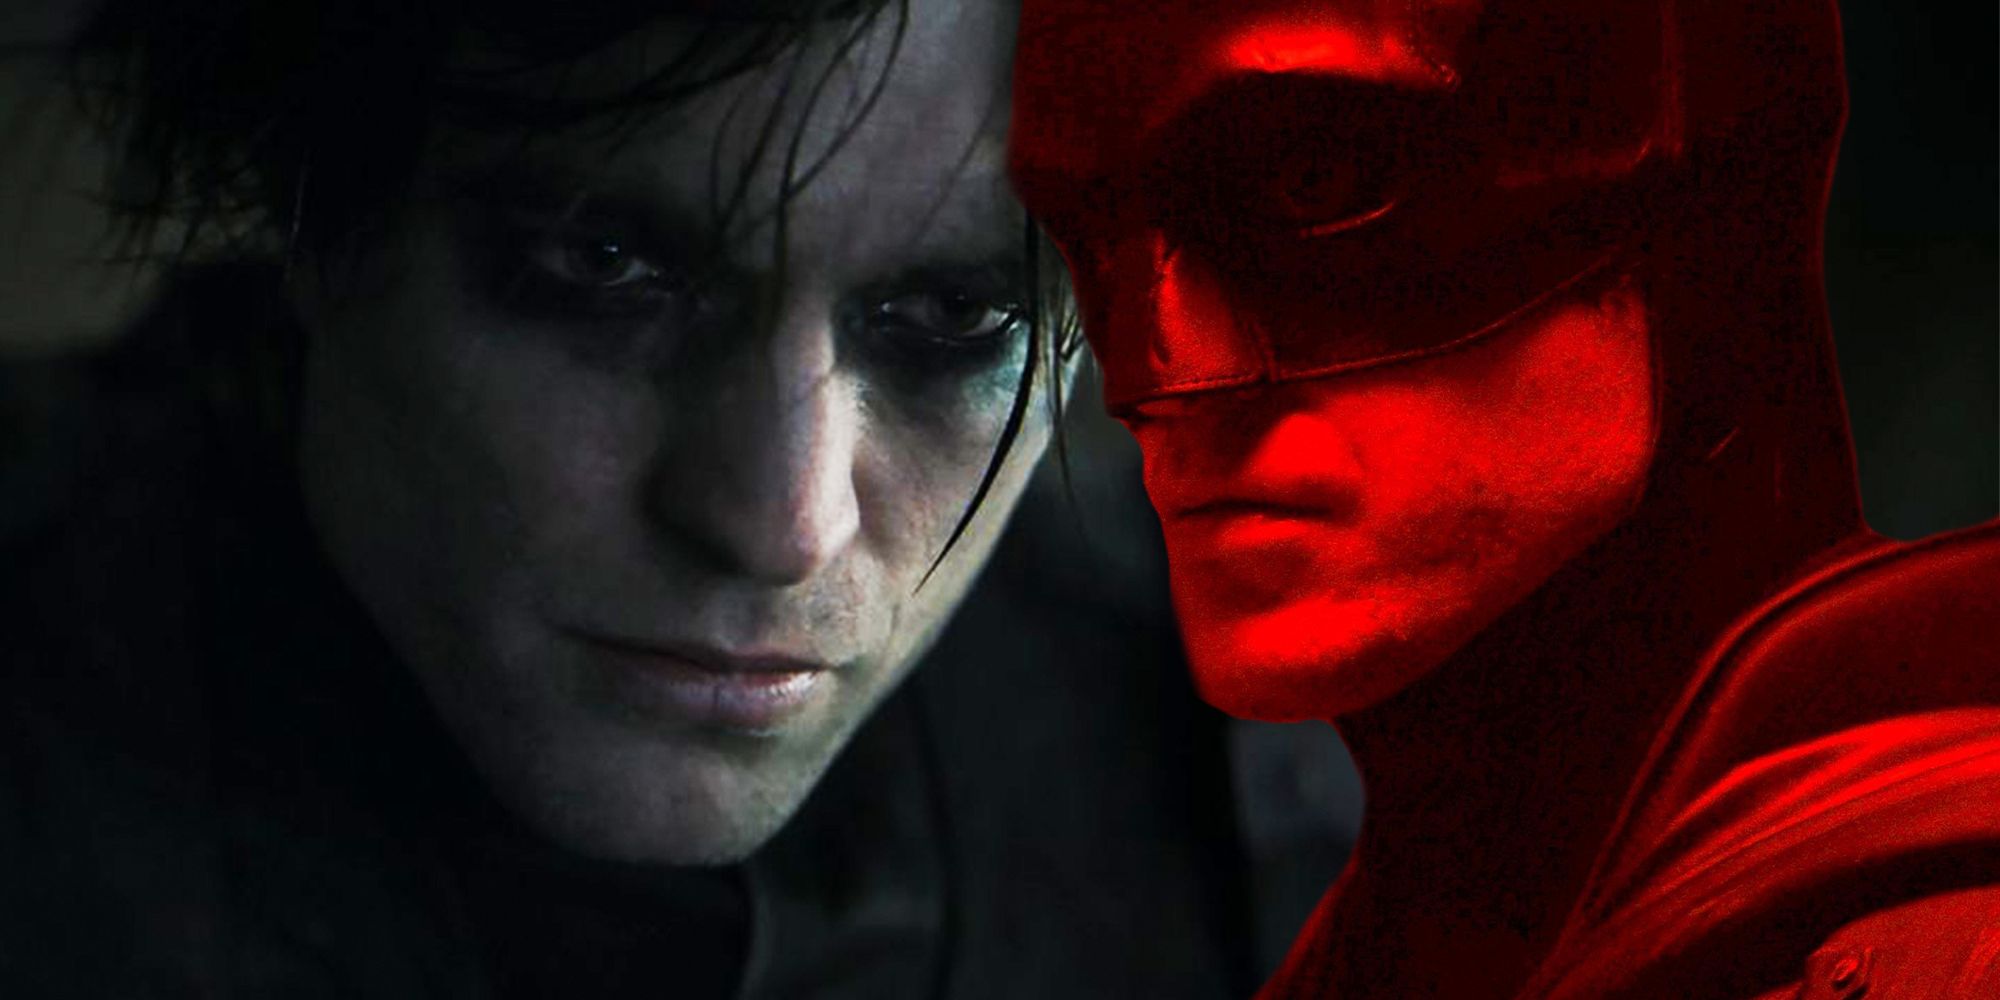 Robert Pattinson in The Batman as both Batman and Bruce Wayne